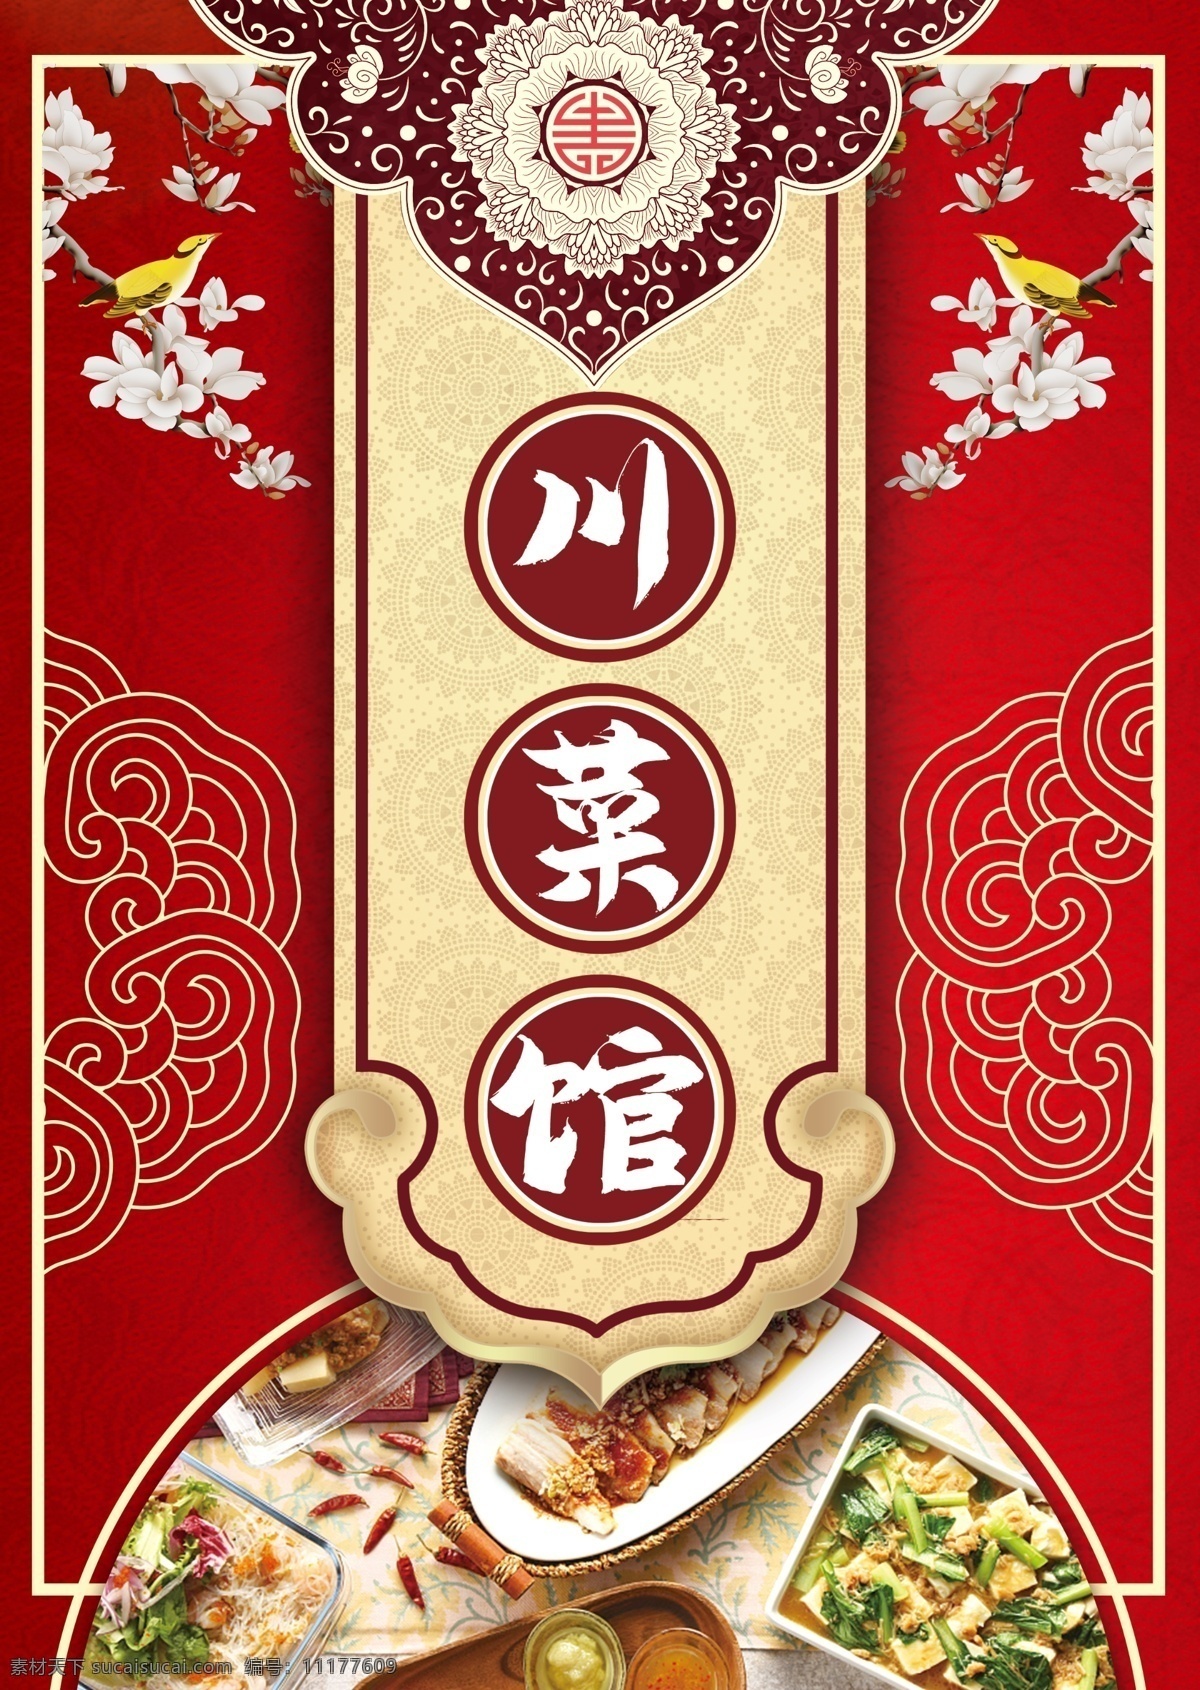 川菜馆图片 川菜馆 菜单 红色 中国风 去 室外广告设计